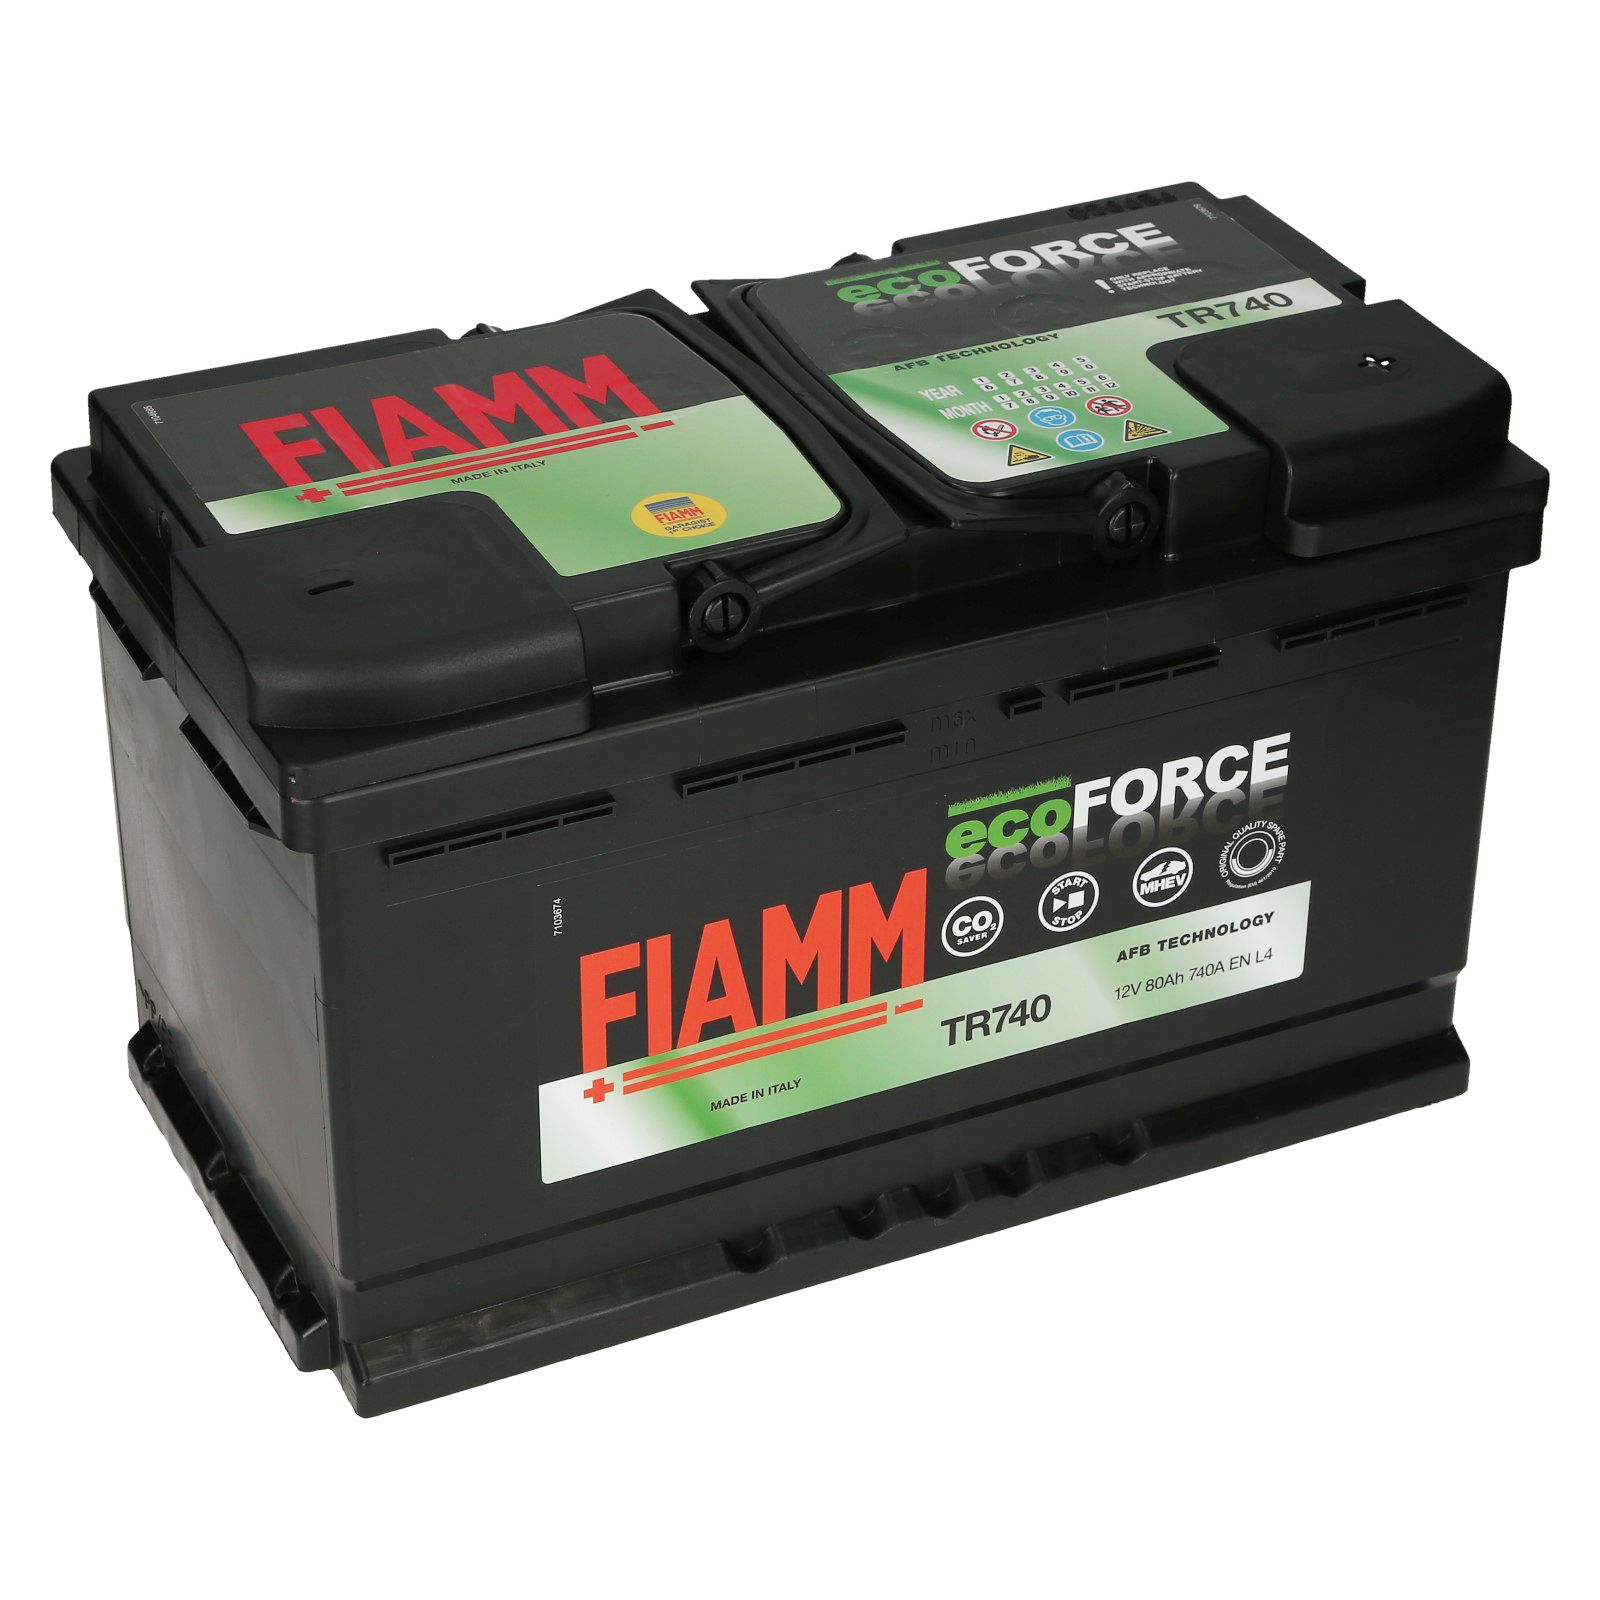 Fiamm Eco Force 12v 80ah 740aen Autobatterien Batcarde Shop Agm